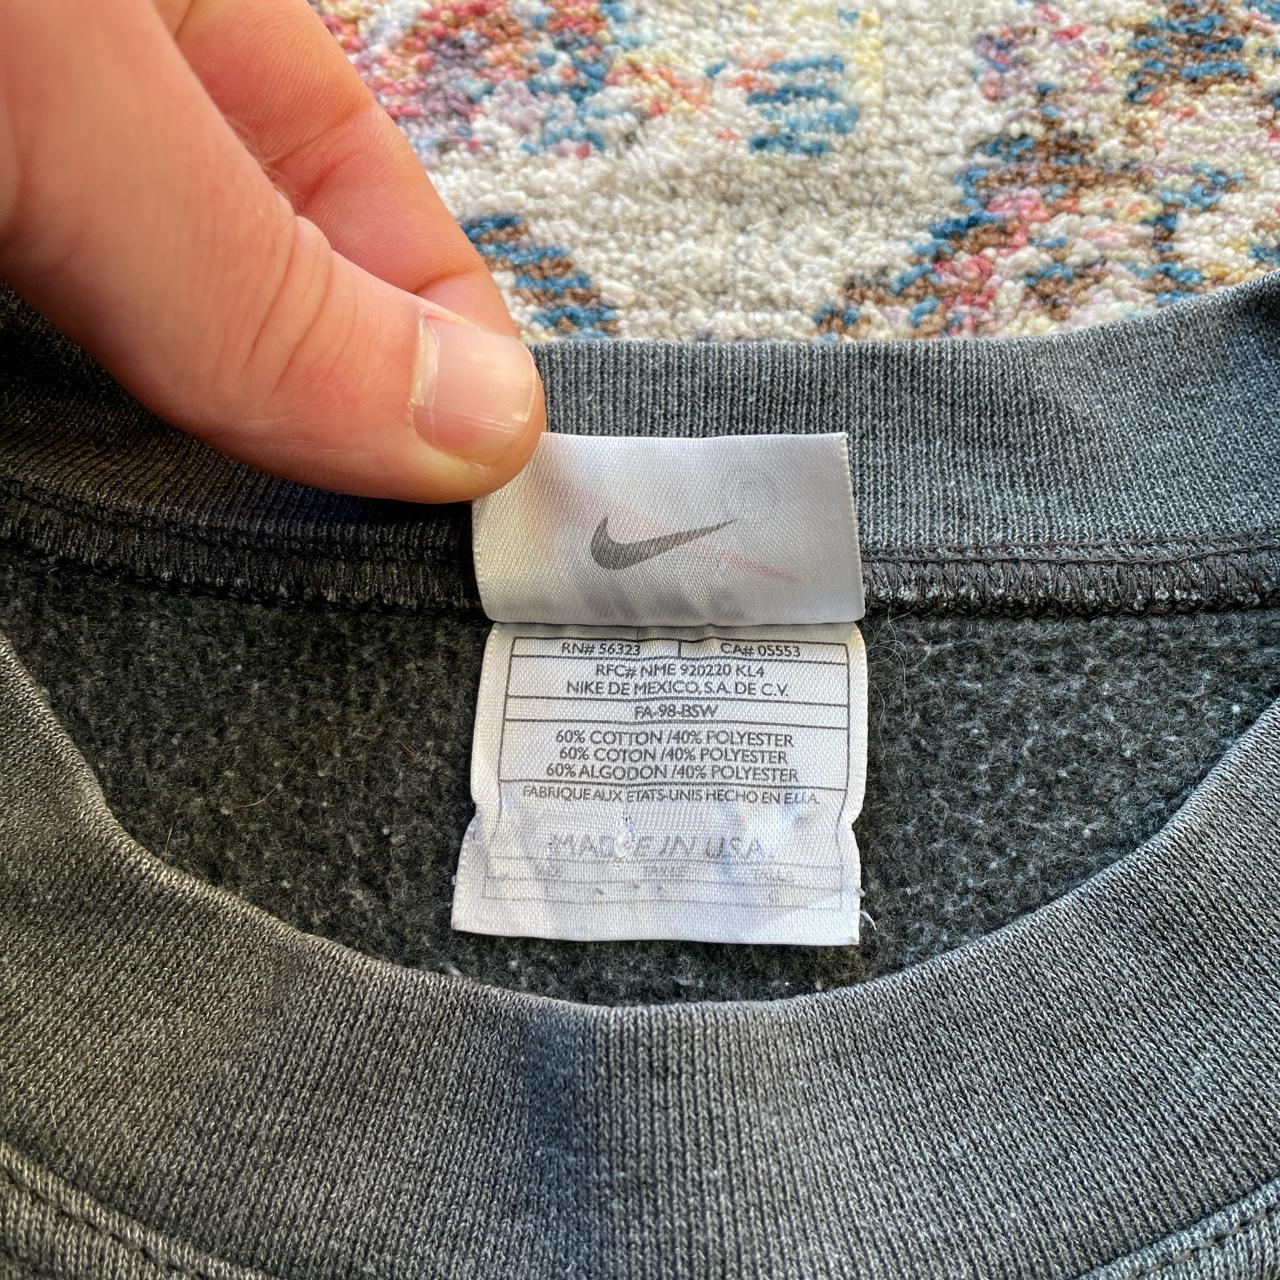 Vintage Grey Nike Spell Out Sweatshirt